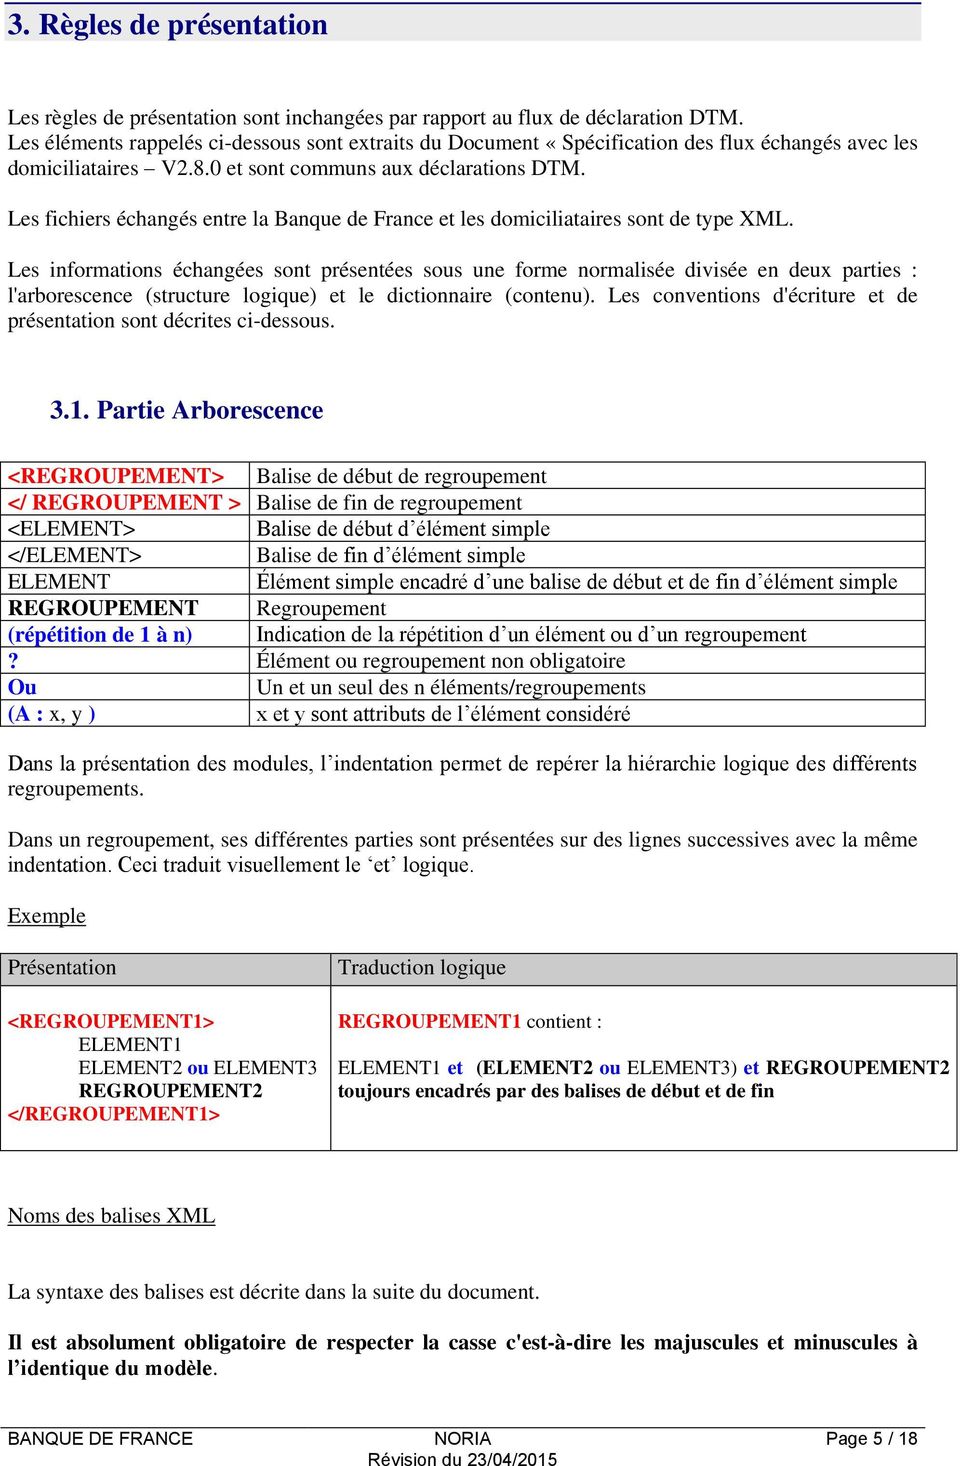 Les fichiers échangés entre la Banque de France et les domiciliataires sont de type XML.